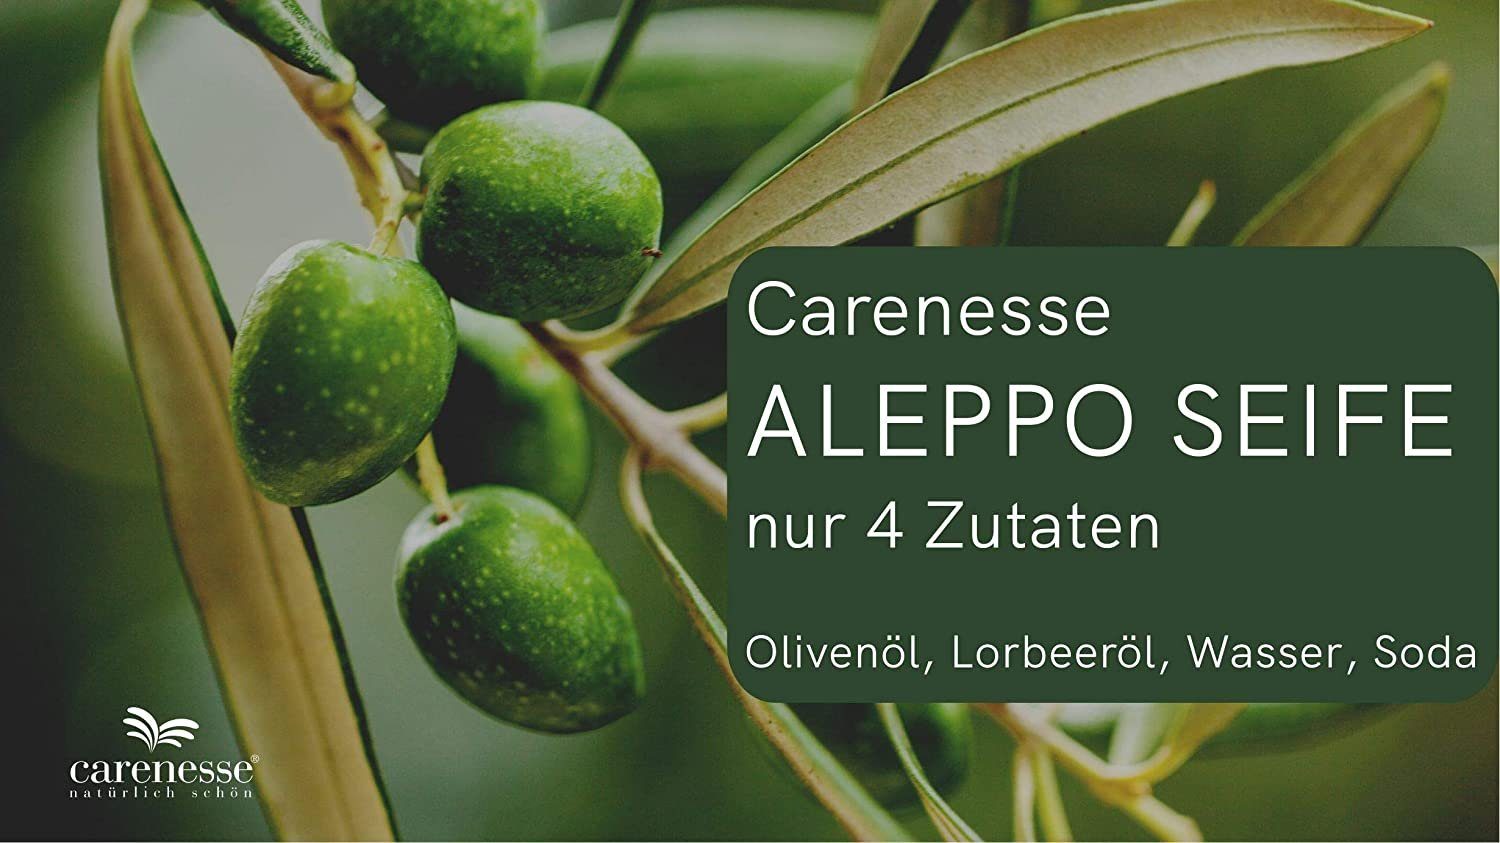 Carenesse Gesichtsseife Original Aleppo Seife Aleppo-Seife Lorbeerölseife 55% Handseife Olivenölseife, Olivenöl, 45% Lorbeeröl & Haarseife Alepposeife